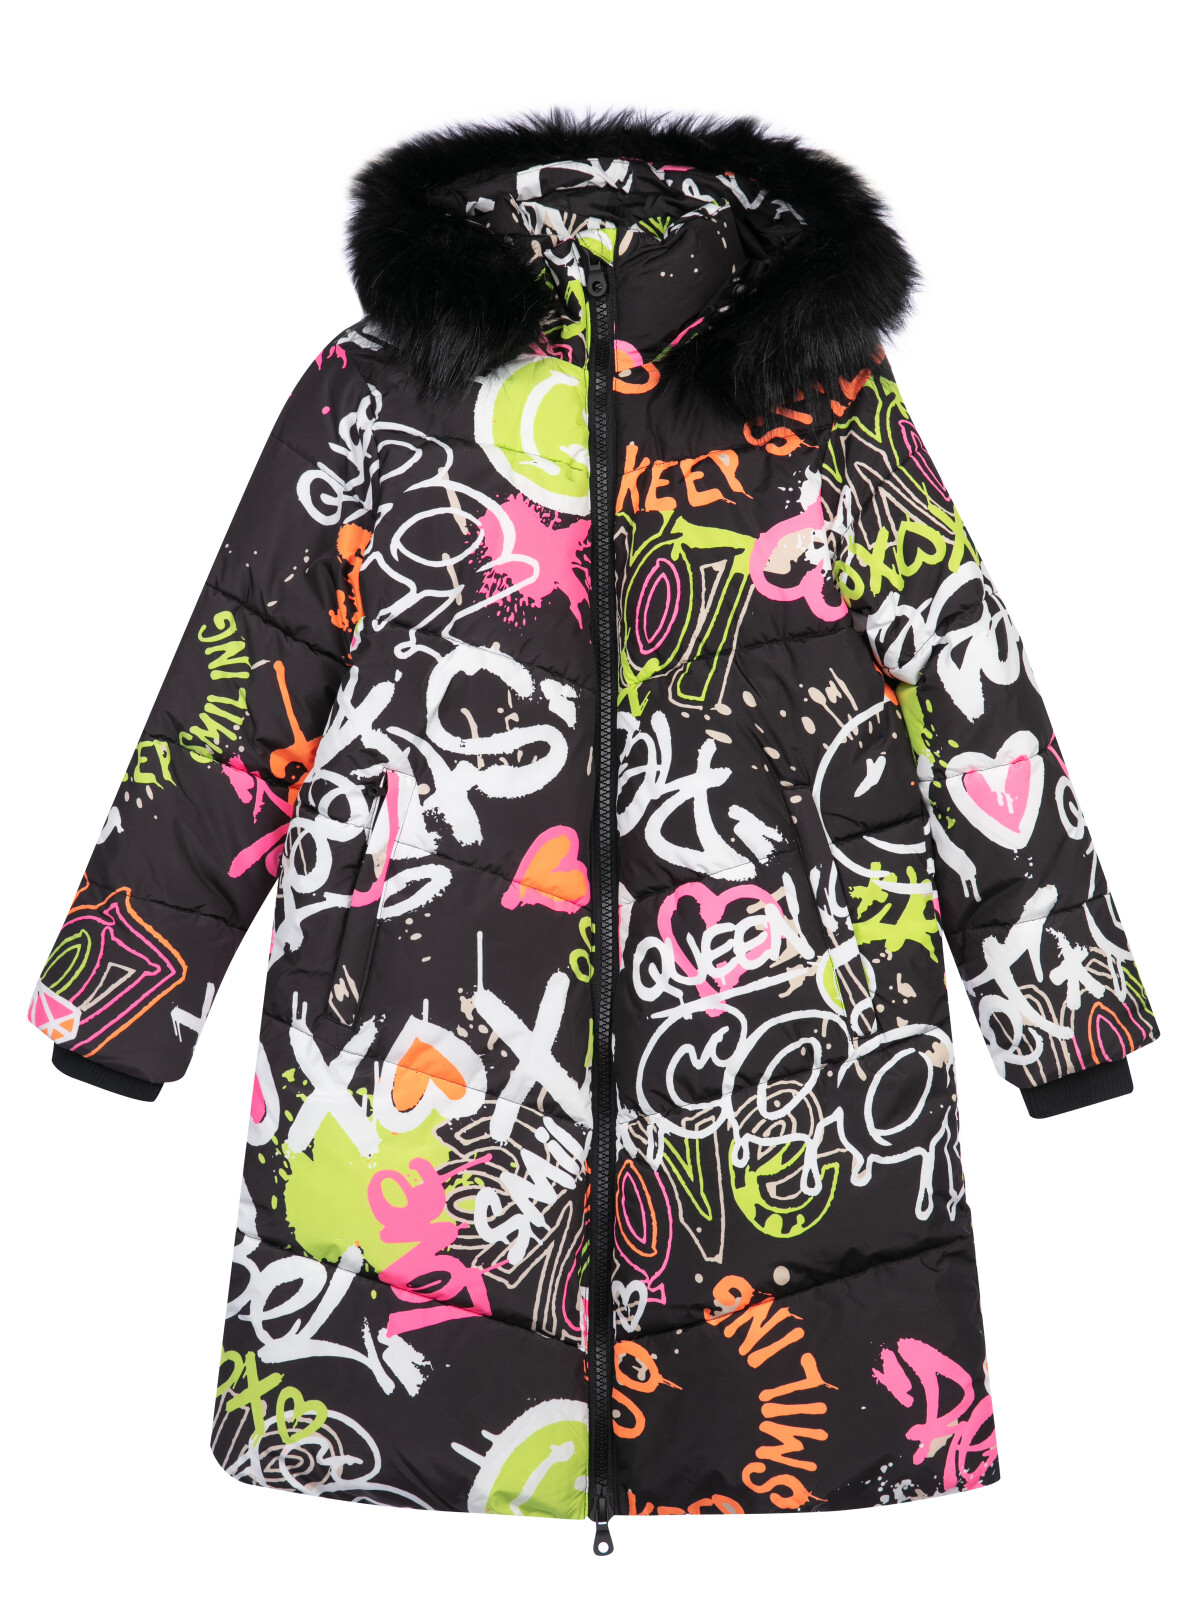 Пальто текстильное с полиуретановым покрытием для девочек PlayToday, цветной, 170